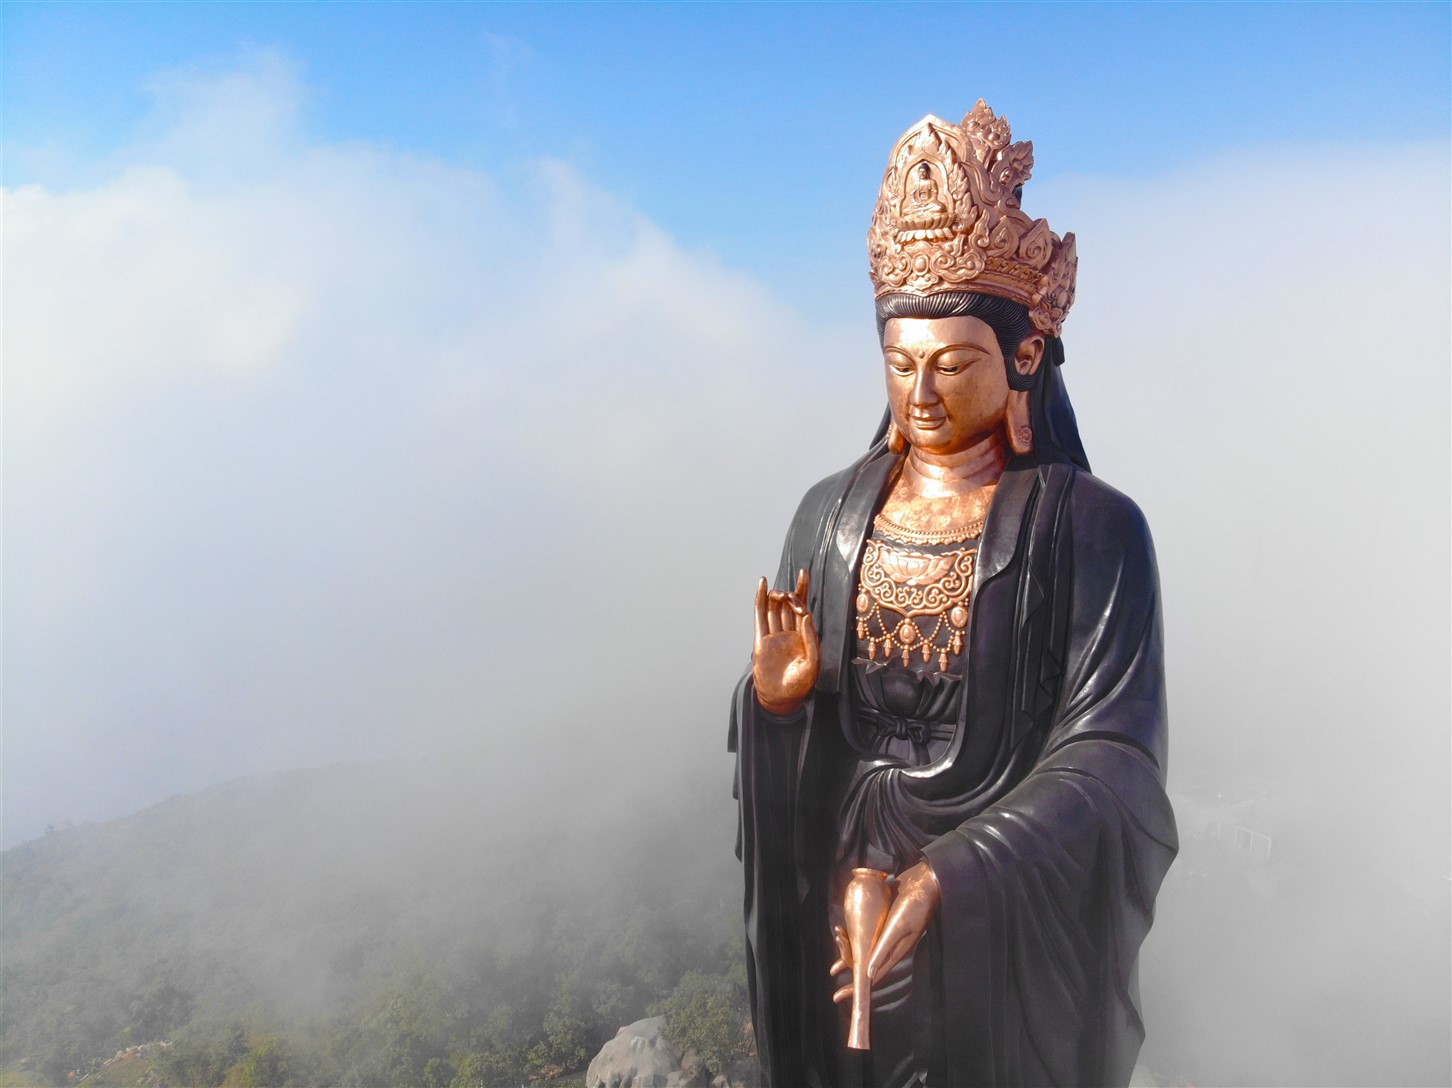 Những điều thú vị về tượng Phật Bà bằng đồng cao nhất Châu Á trên đỉnh núi  | baotintuc.vn